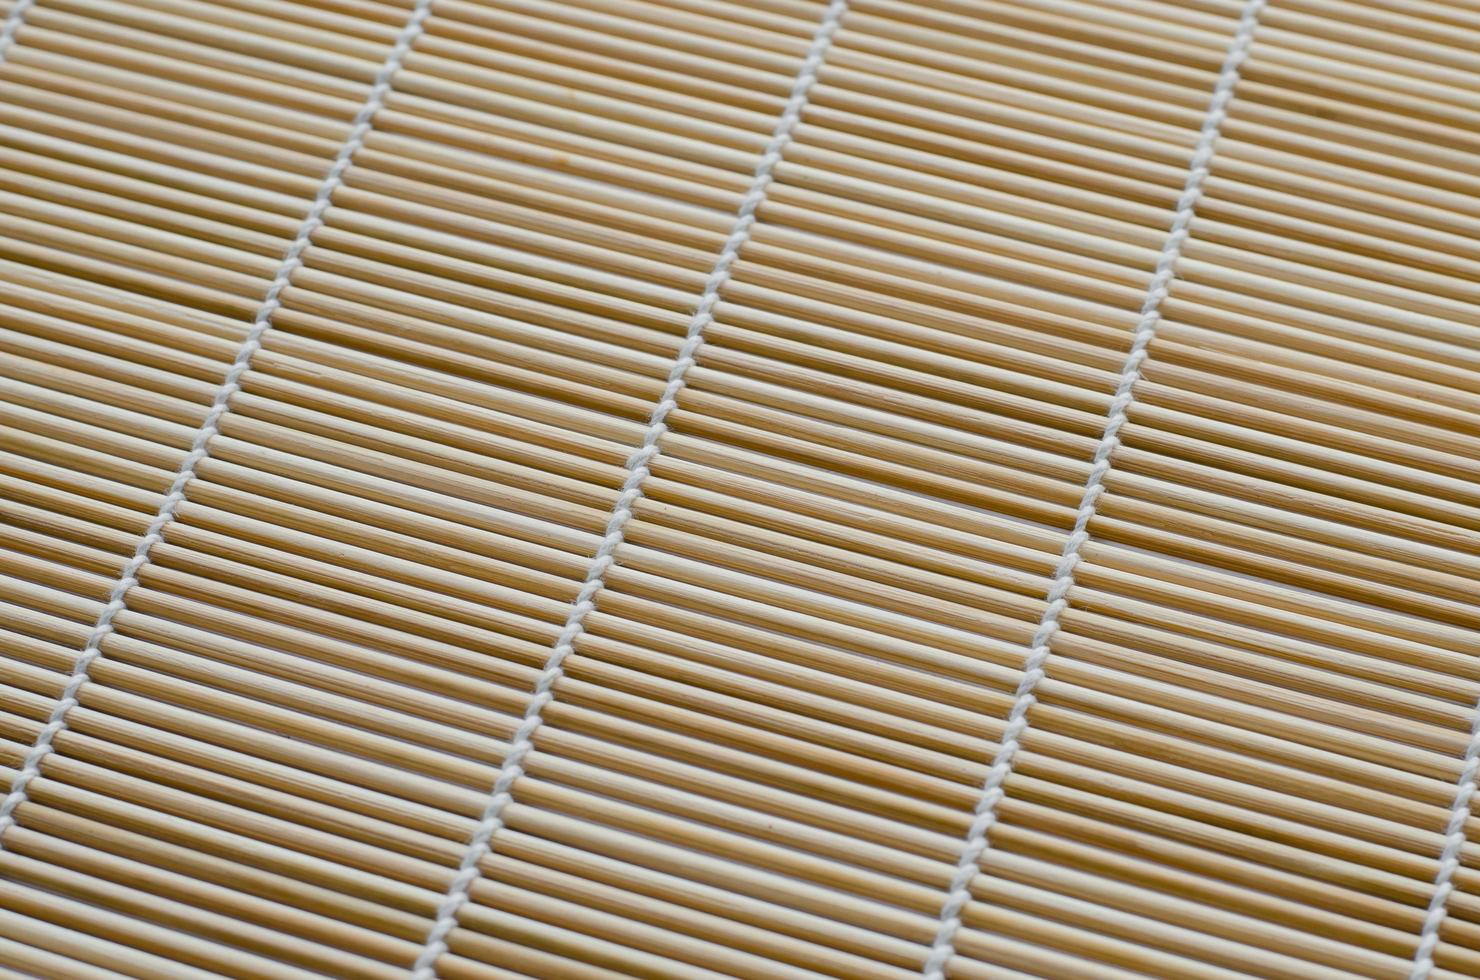 Bamboo Mat Close Up Texture photo